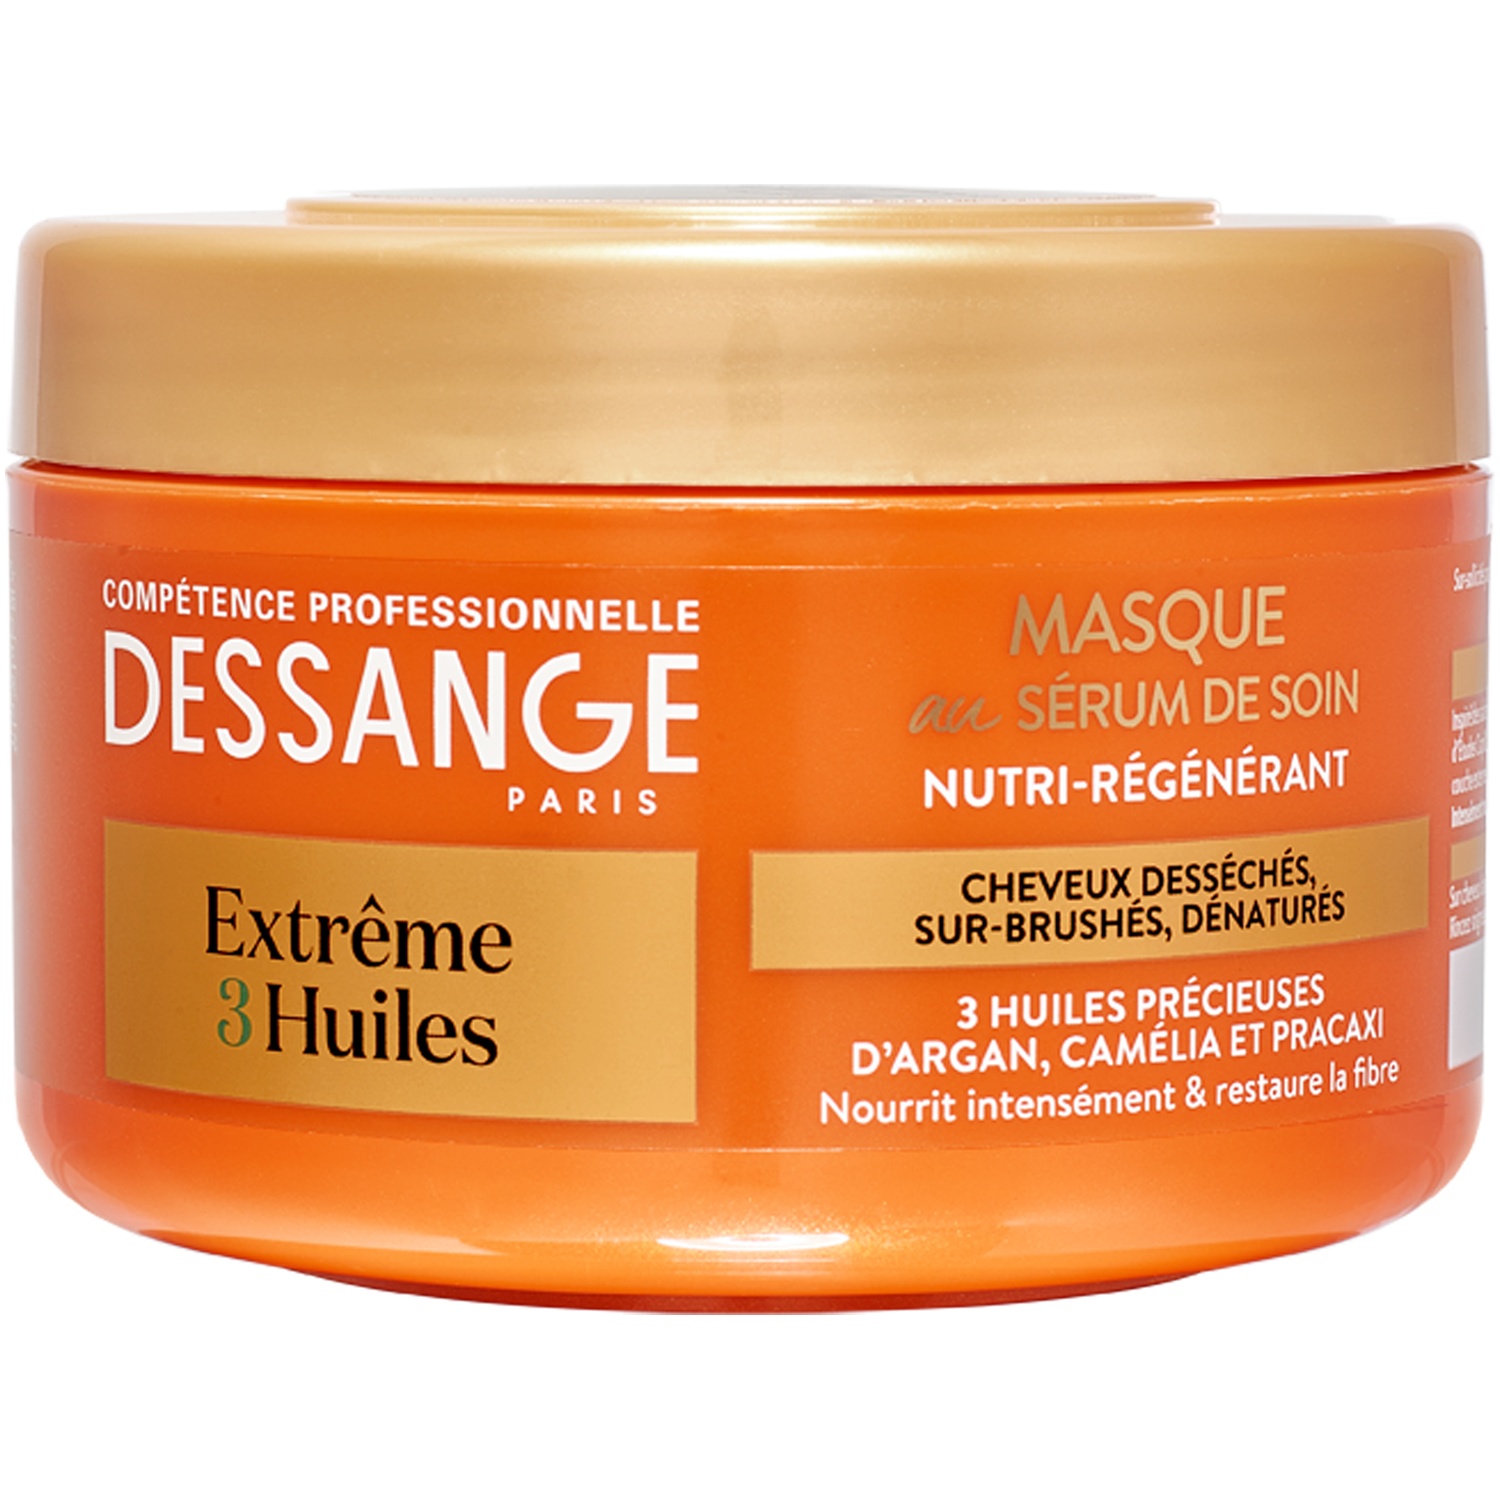 Dessange Professional Hair Luxury Extreme 3 Huiles regenerująca maska do  włosów, 250 ml | hebe.pl